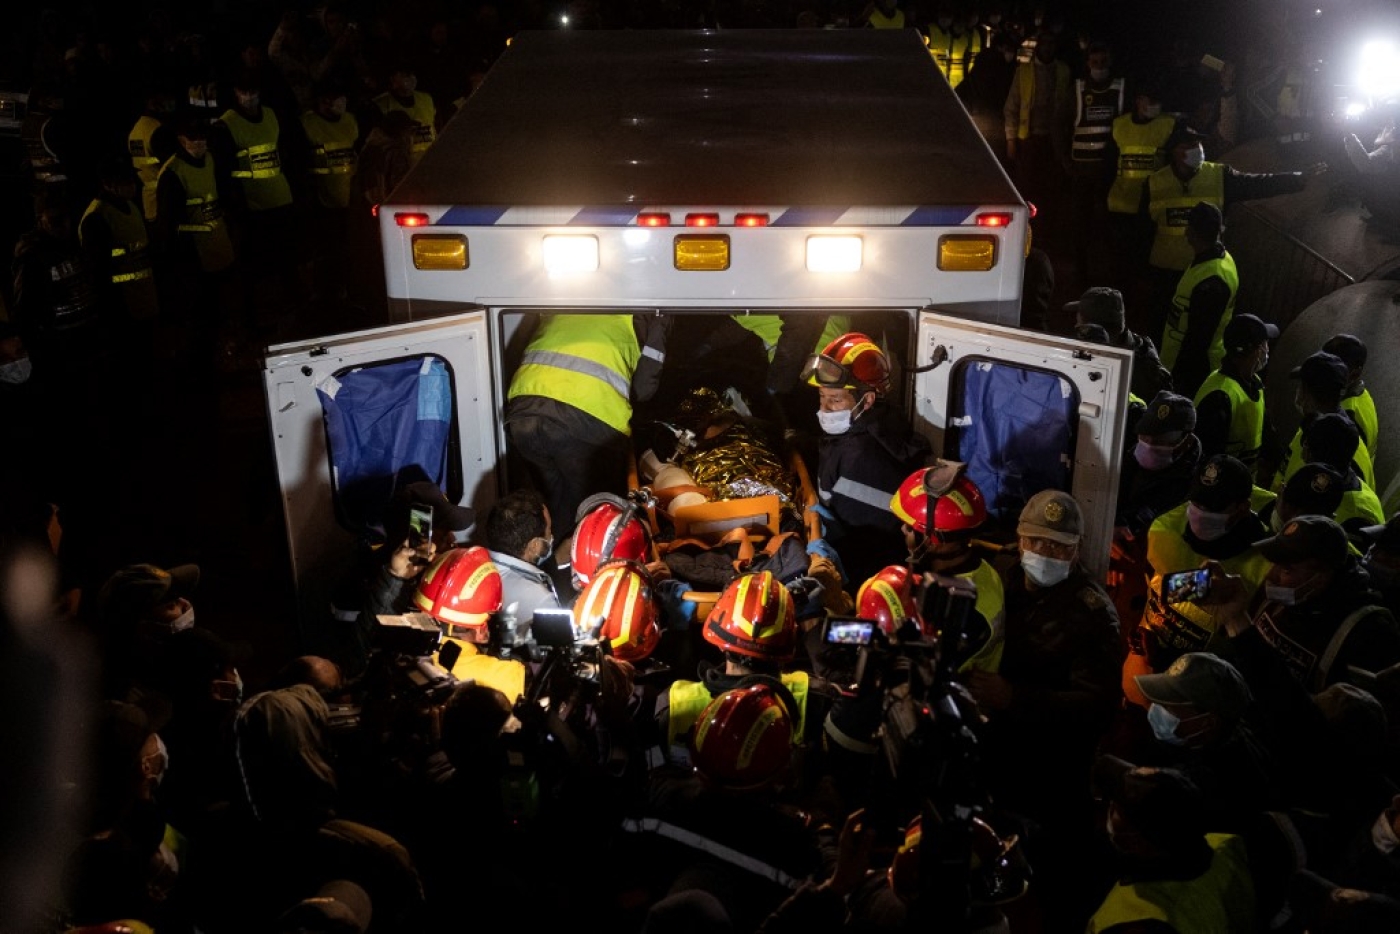 Les équipes d’urgence marocaines transportent Rayan Oram, 5 ans, dans une ambulance après l’avoir sorti d’un puits dans lequel il était tombé le 1er février, dans le village d’Ighrane, dans la province rurale de Chefchaouen, le 5 février 2022 (AFP/Fadel Senna)